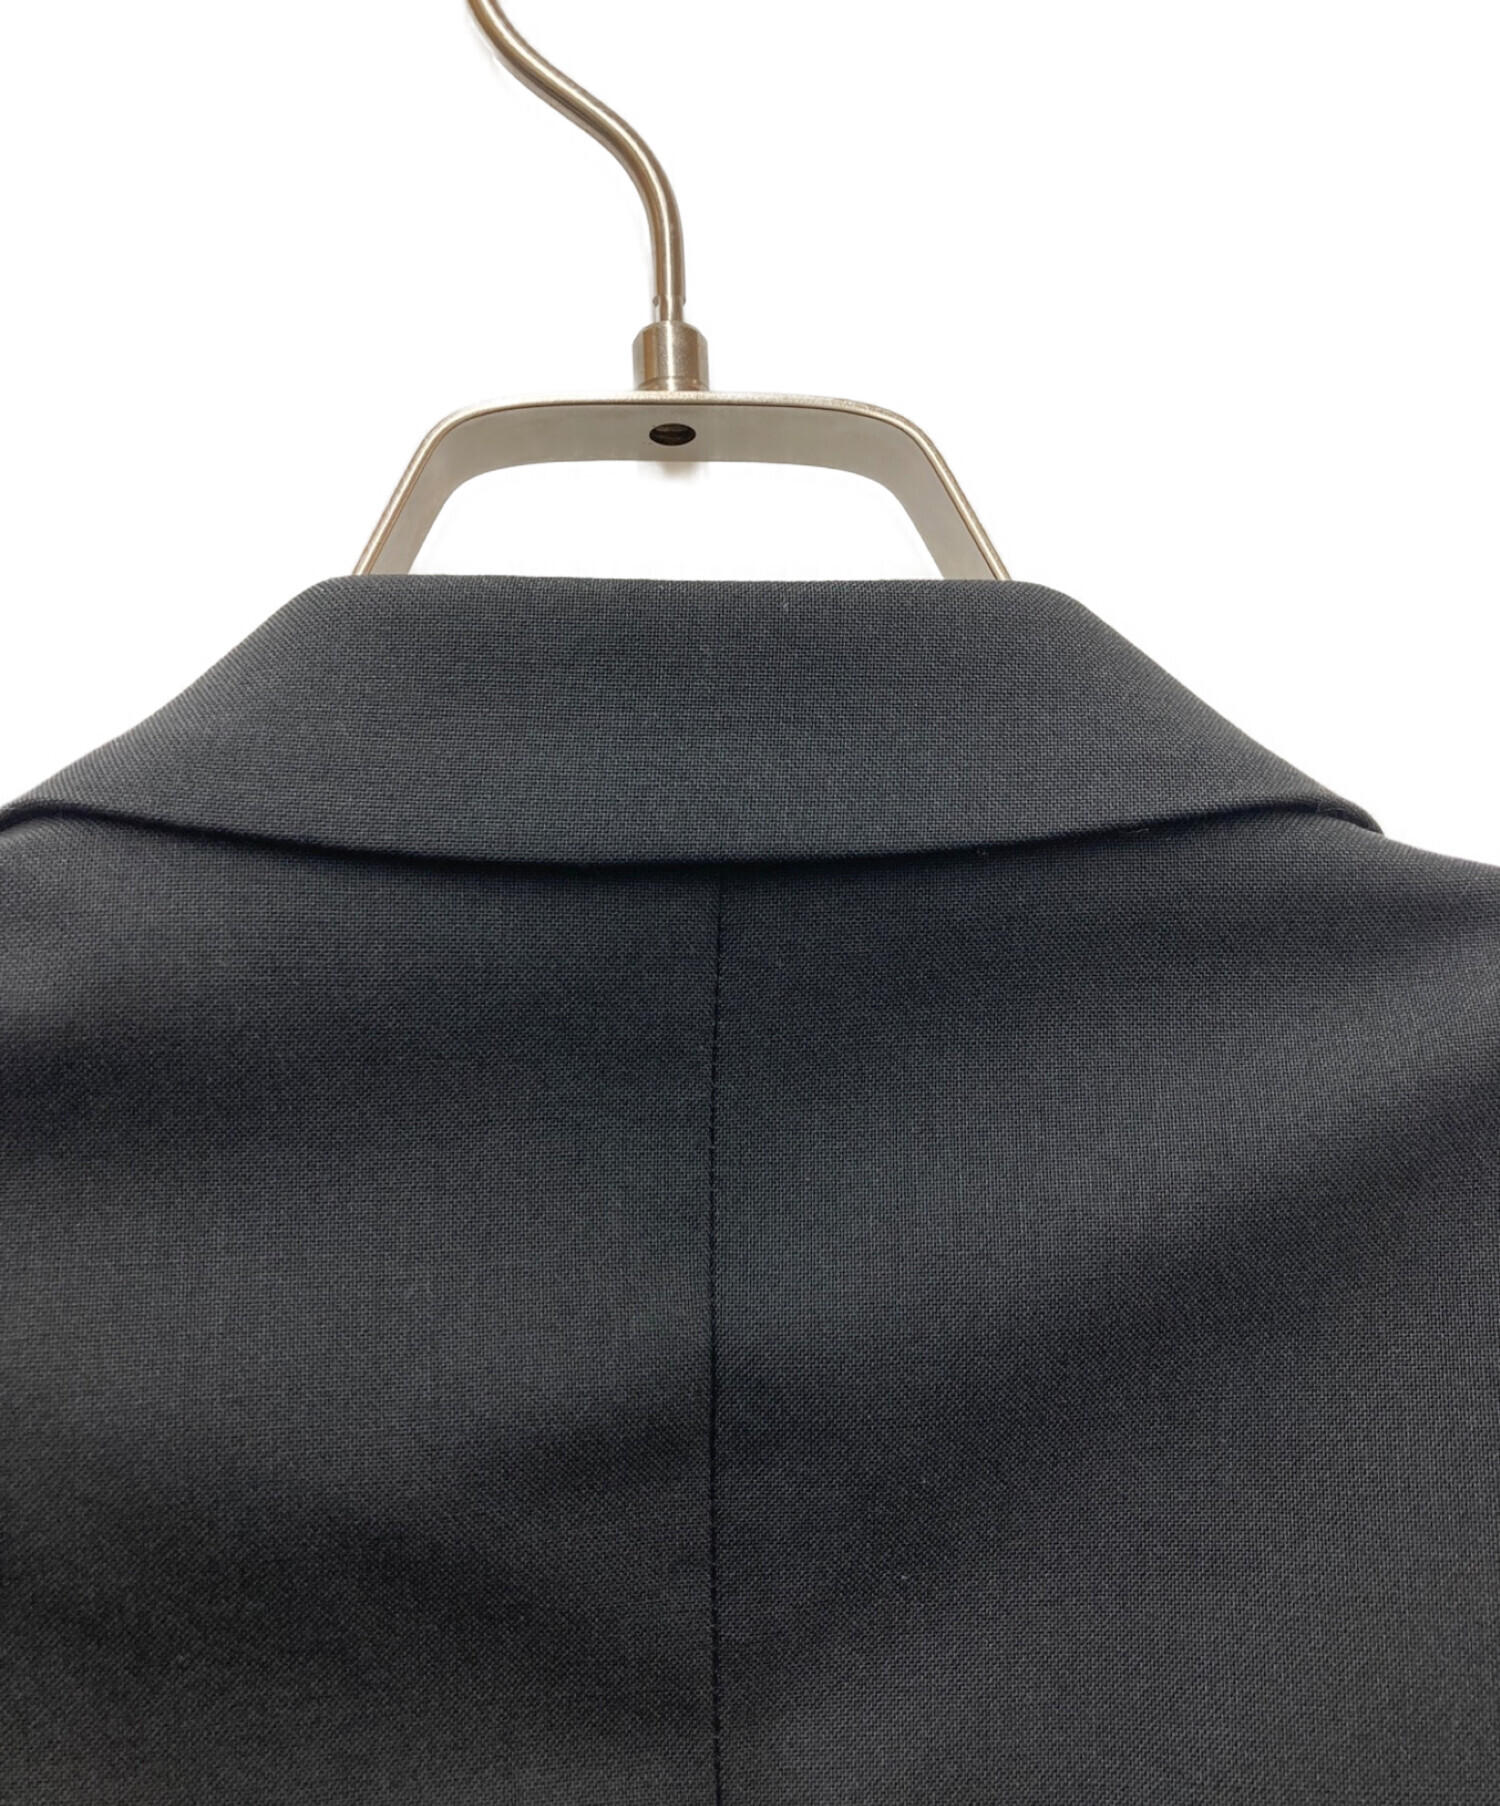 新品タグ付✨ニールバレット テーラードジャケット 上着 2B フォーマル 黒